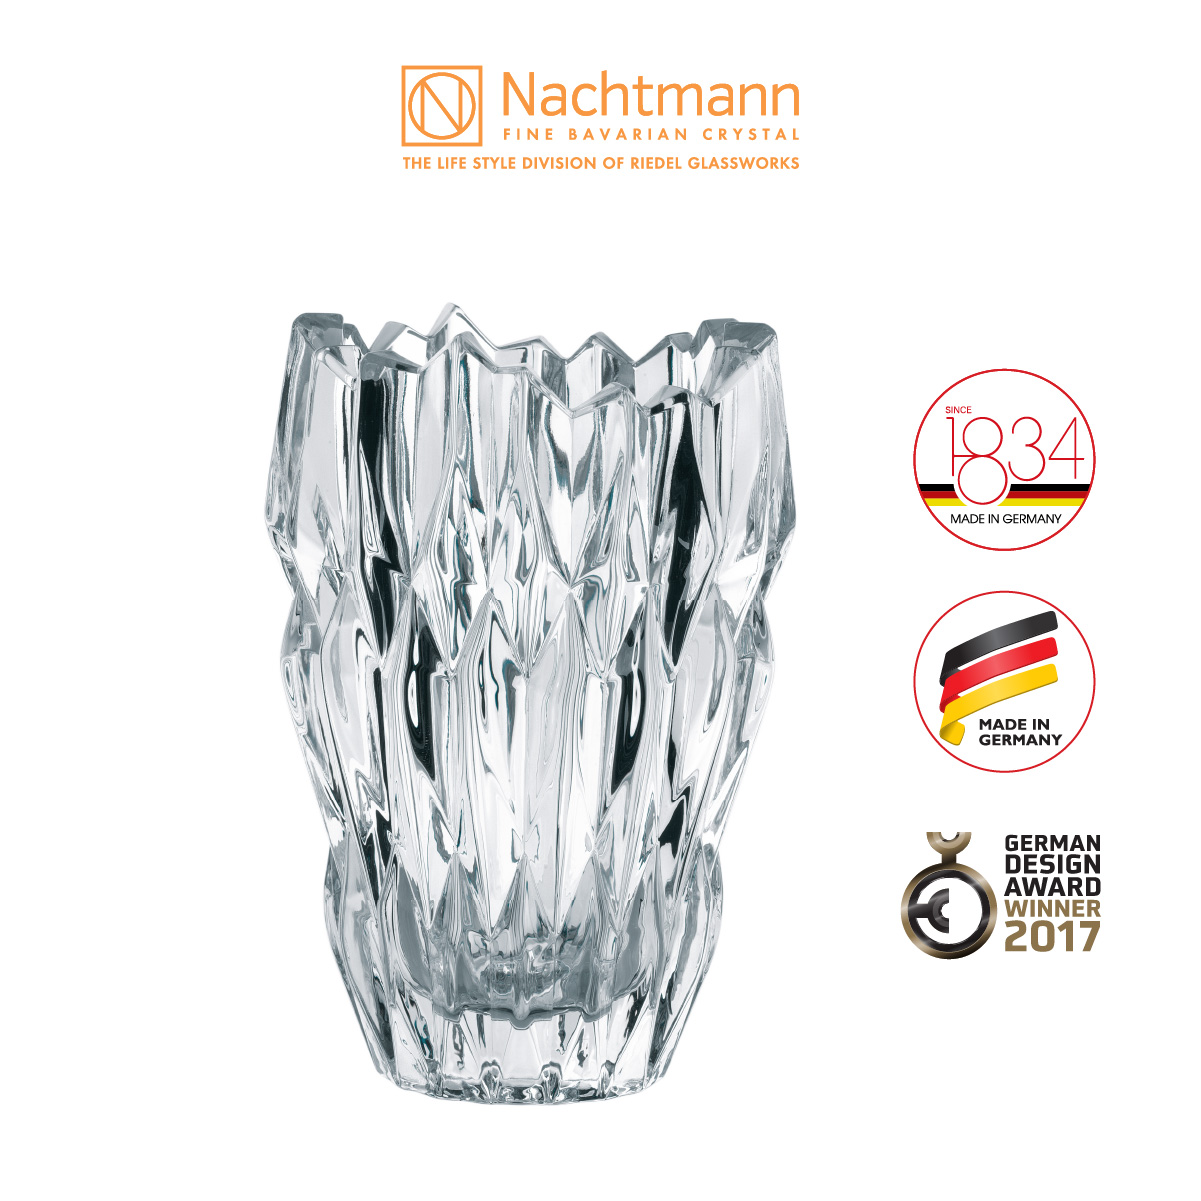 Bình hoa pha lê Nachtmann Quartz 16cm-Hàng chính hãng